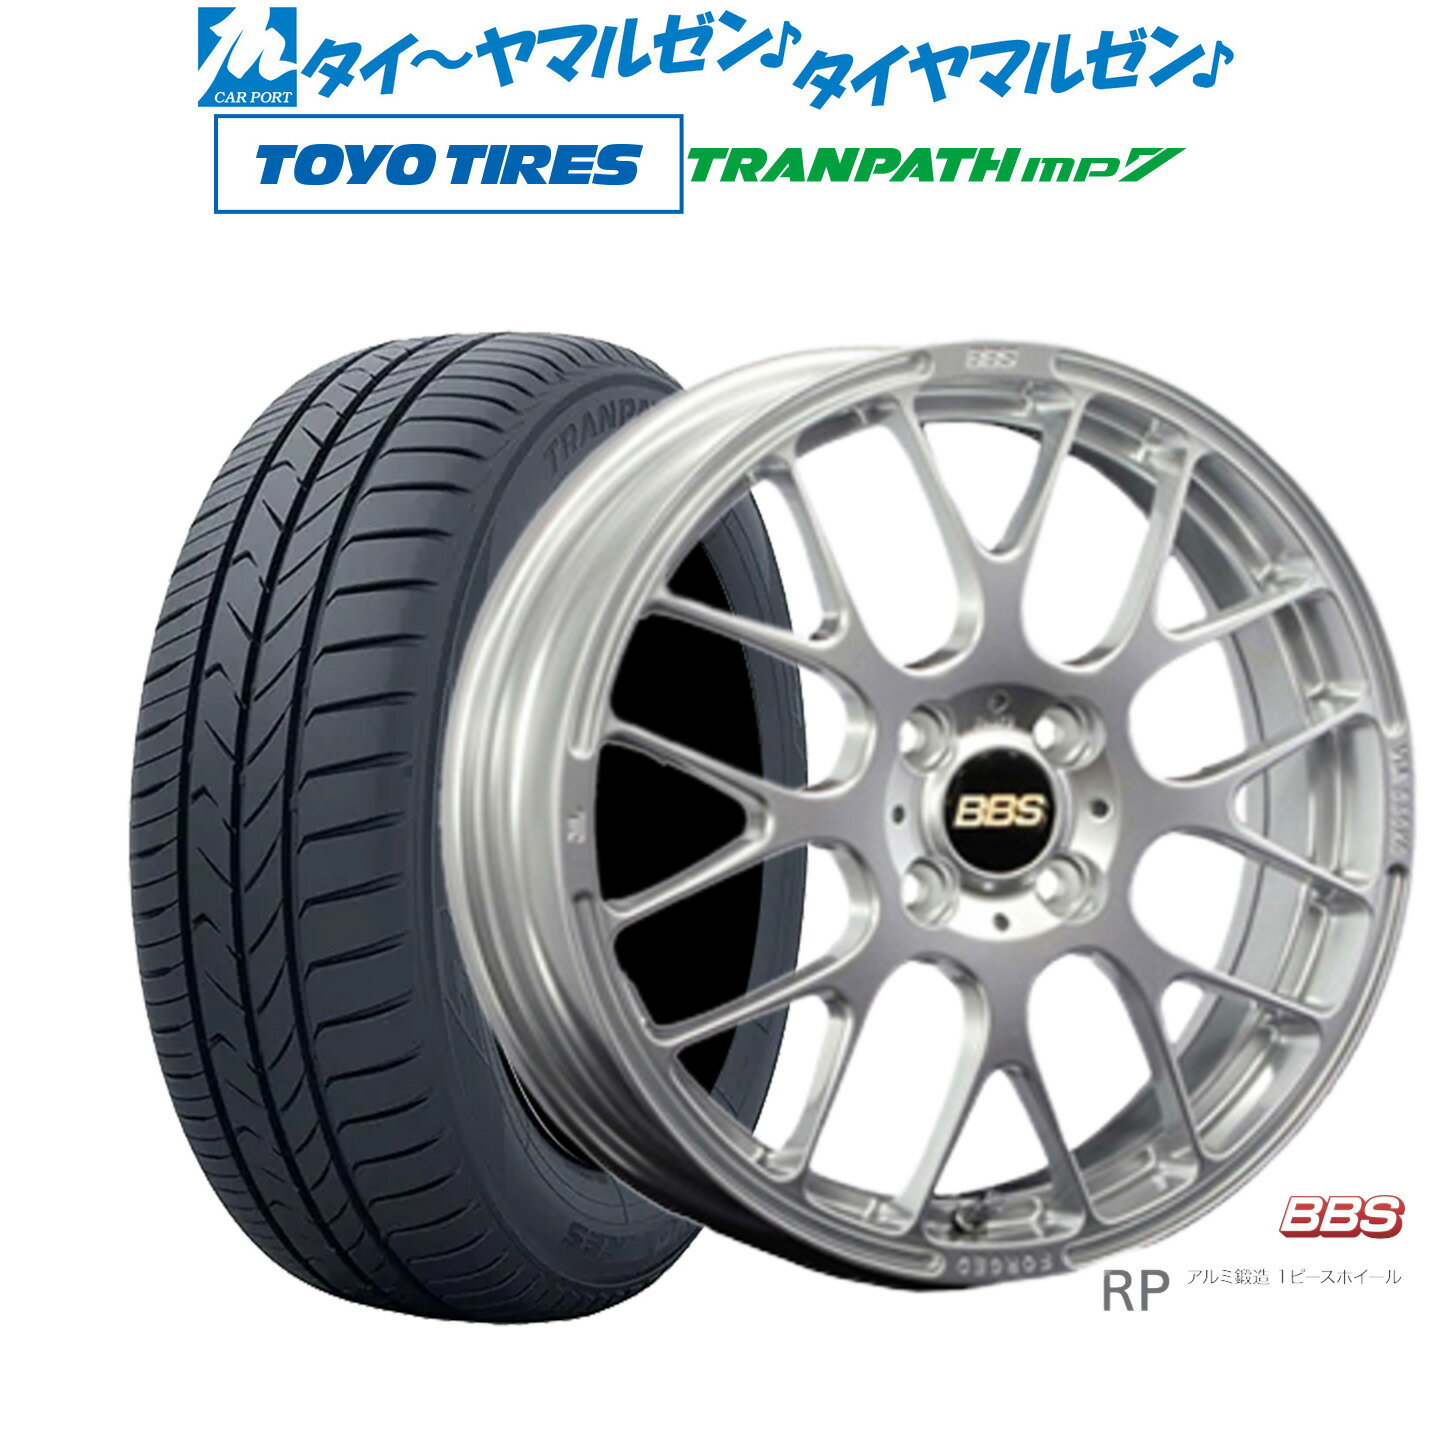 [5/20]割引クーポン配布新品 サマータイヤ ホイール4本セットBBS JAPAN RP15インチ 6.0Jトーヨータイヤ トランパス mp7 185/65R15